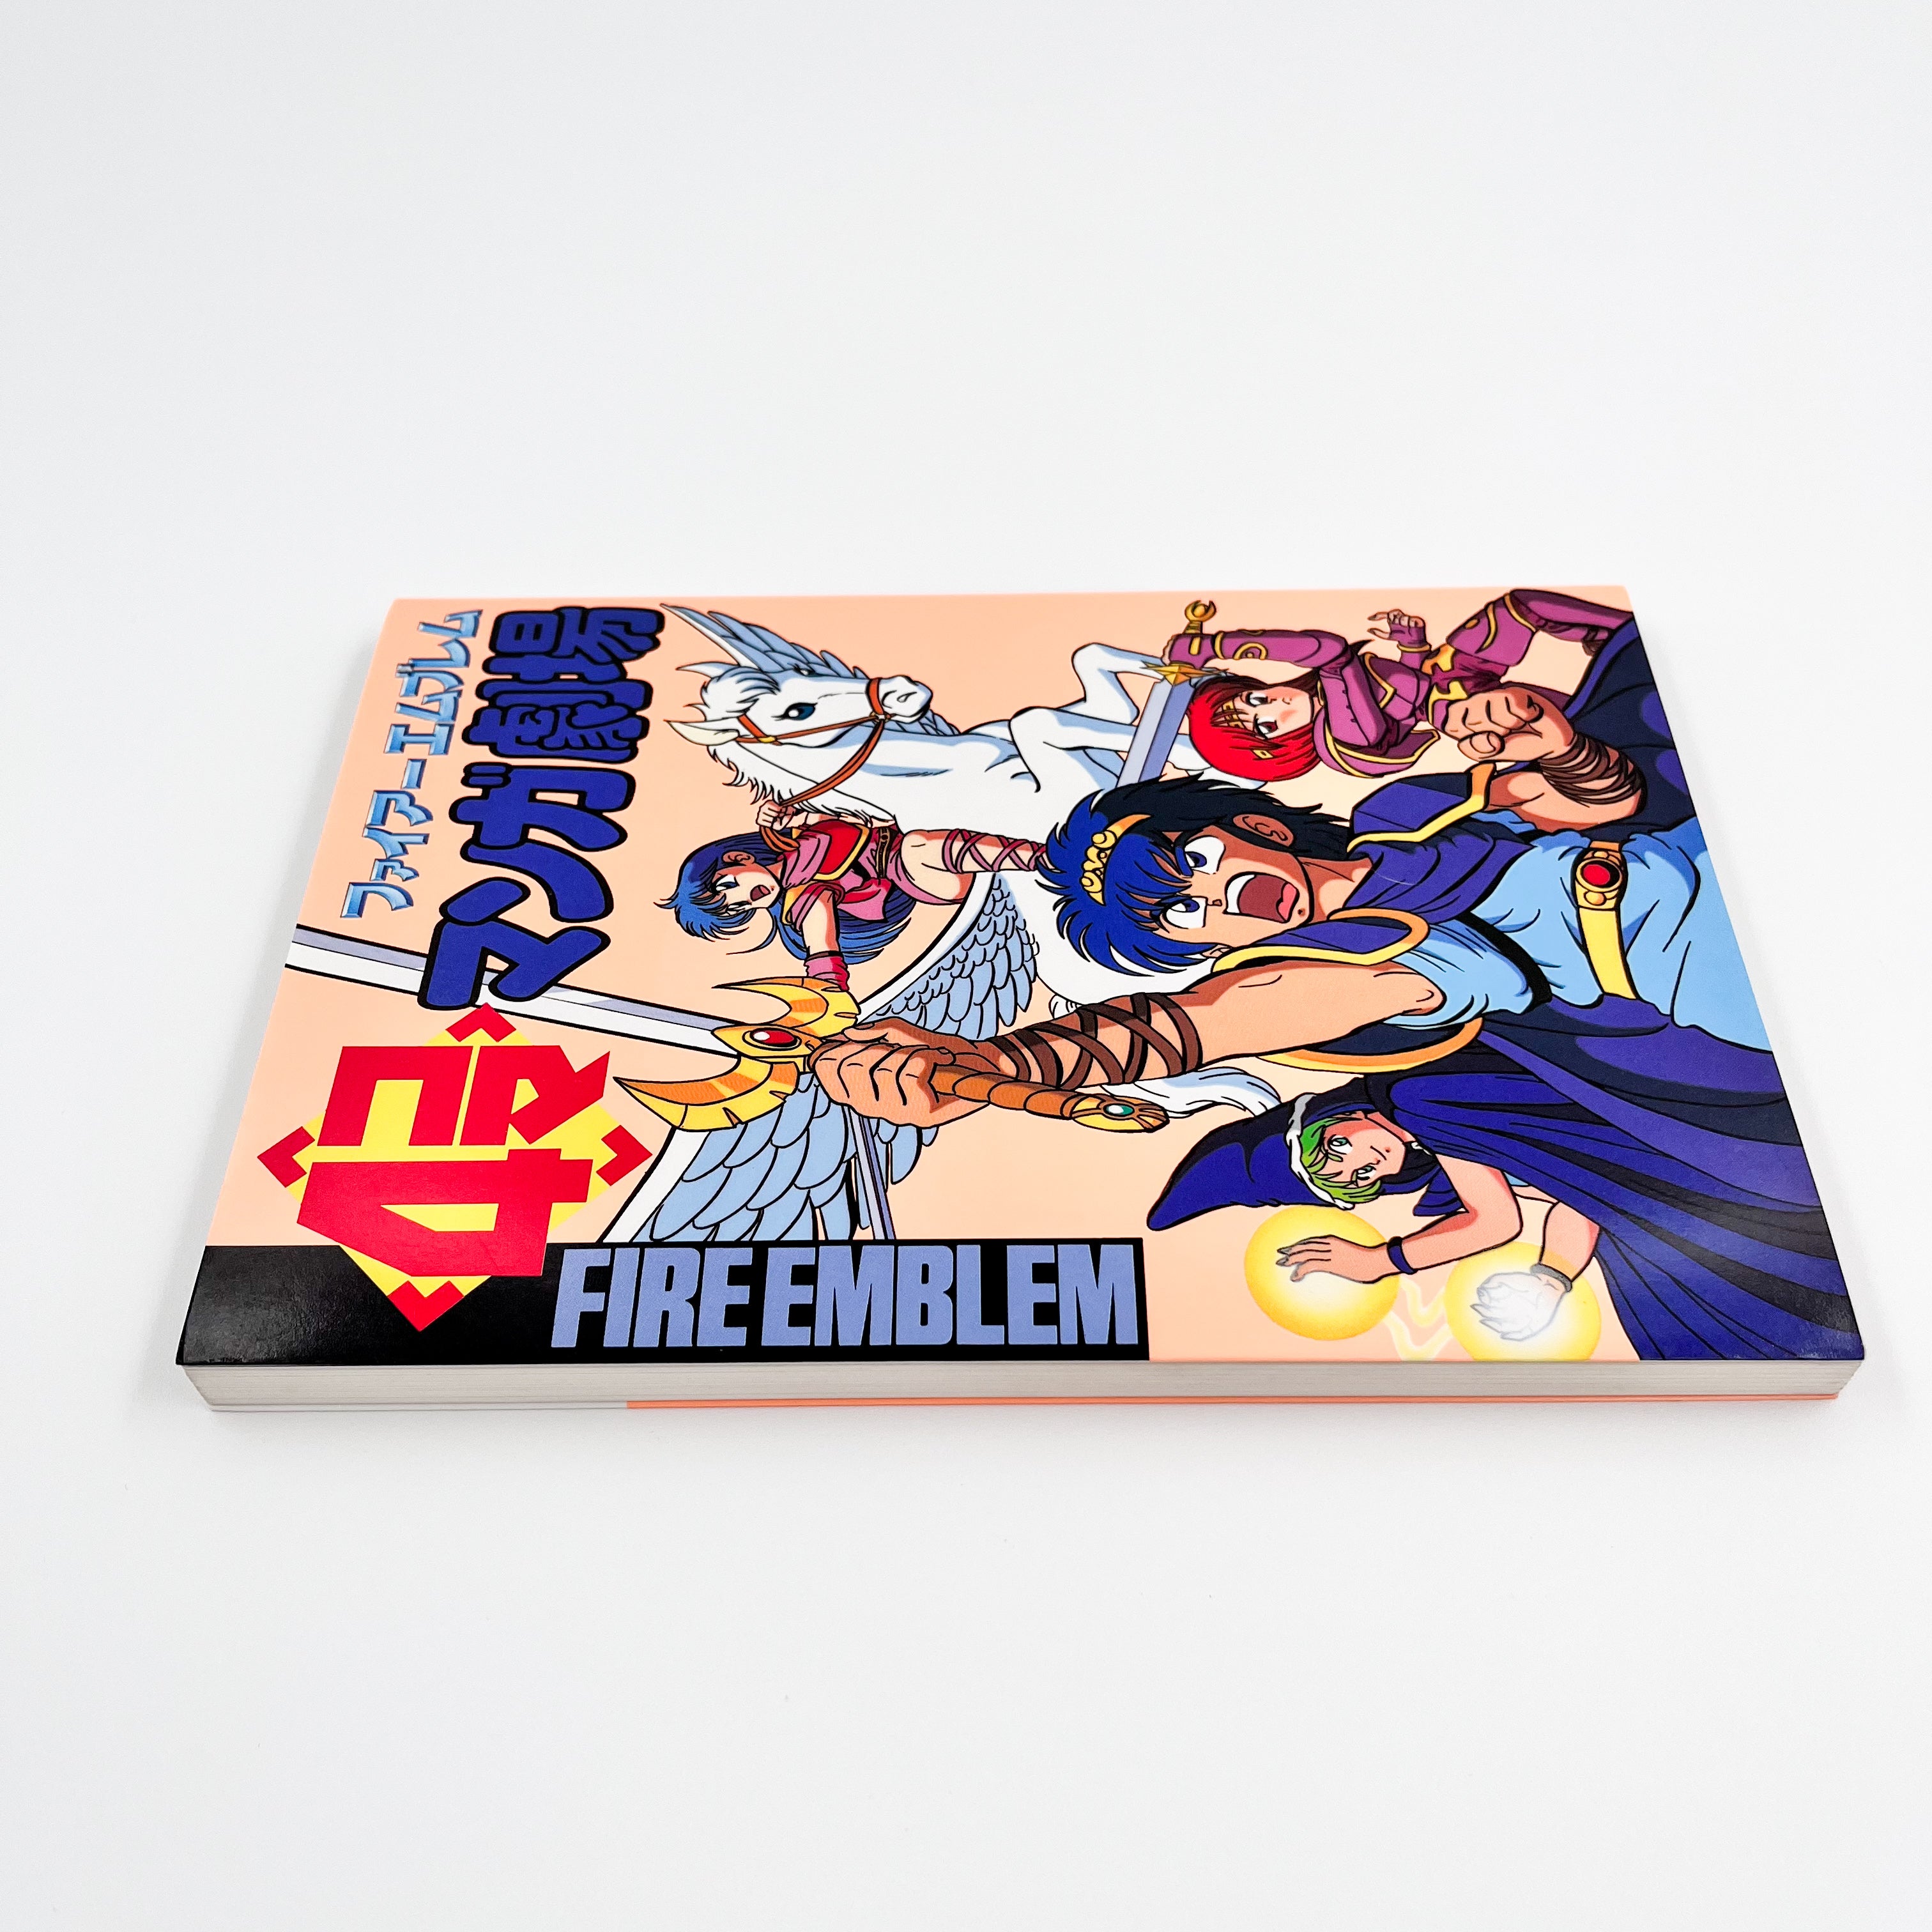 Fire Emblem 4koma Manga Theater Side 1